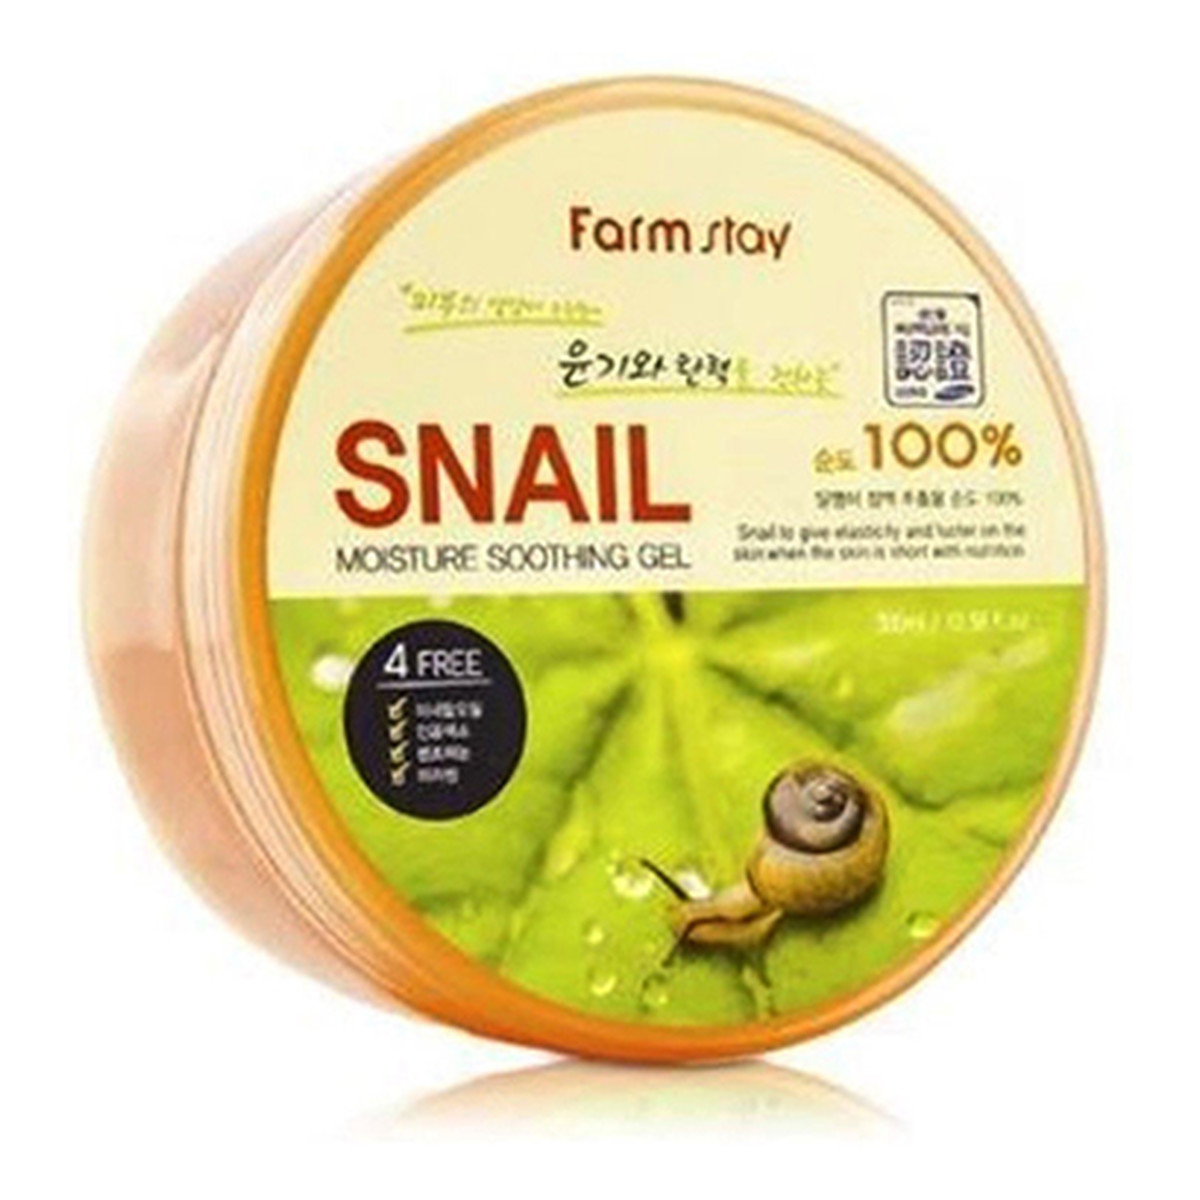 Farmstay Farm Stay Snail Moisture Soothing Gel koreański żel ze śluzem ślimaka 300ml